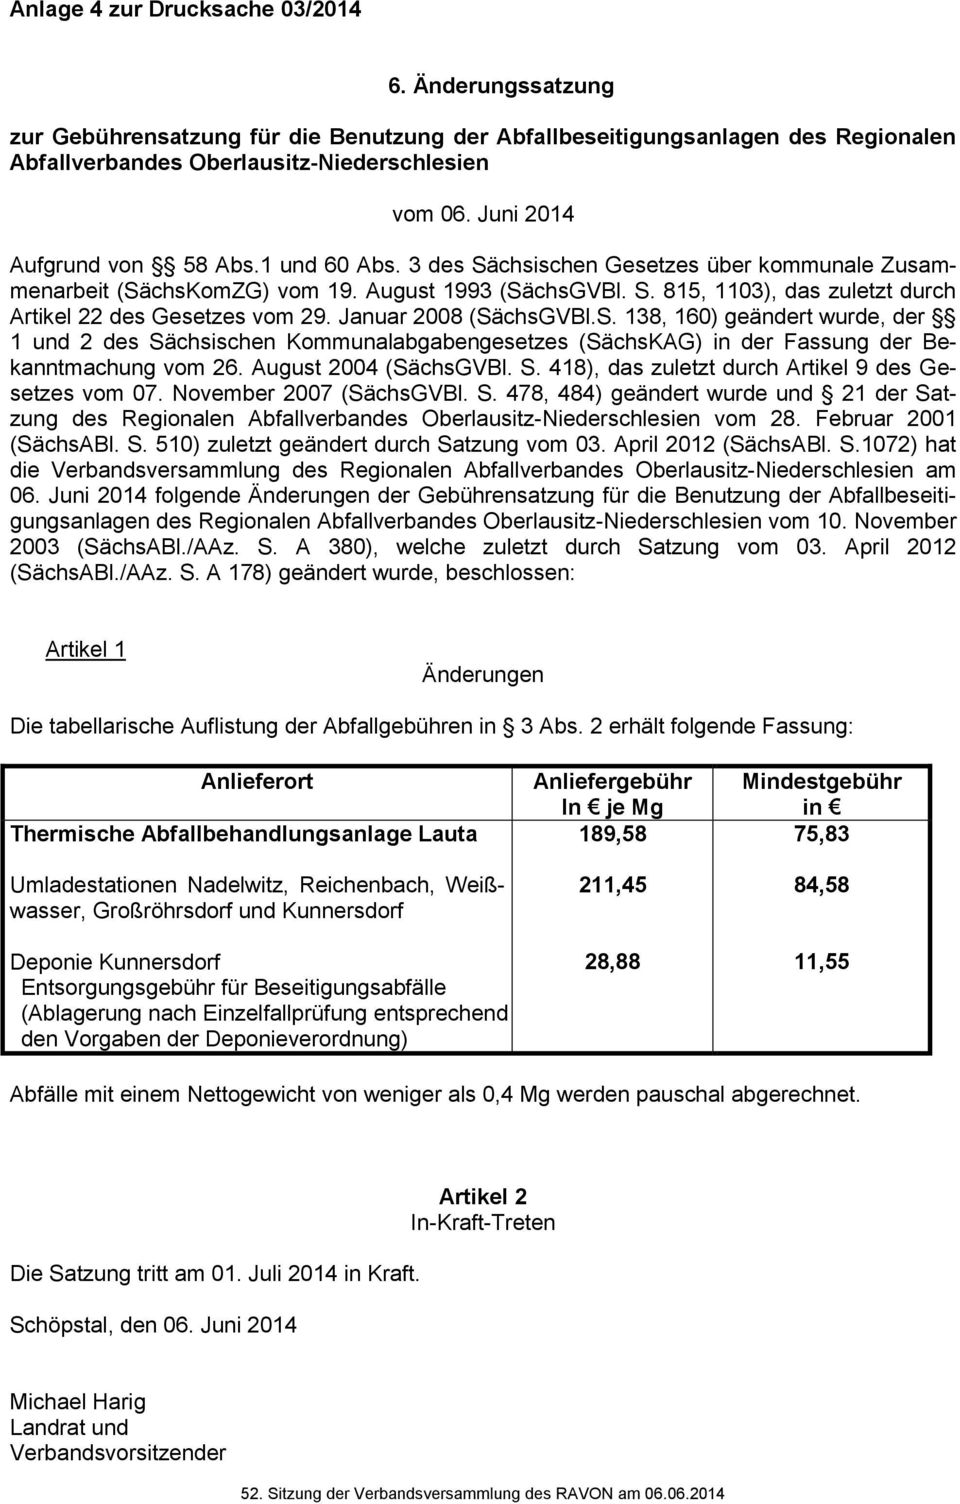 Januar 2008 (SächsGVBl.S. 138, 160) geändert wurde, der 1 und 2 des Sächsischen Kommunalabgabengesetzes (SächsKAG) in der Fassung der Bekanntmachung vom 26. August 2004 (SächsGVBl. S. 418), das zuletzt durch Artikel 9 des Gesetzes vom 07.